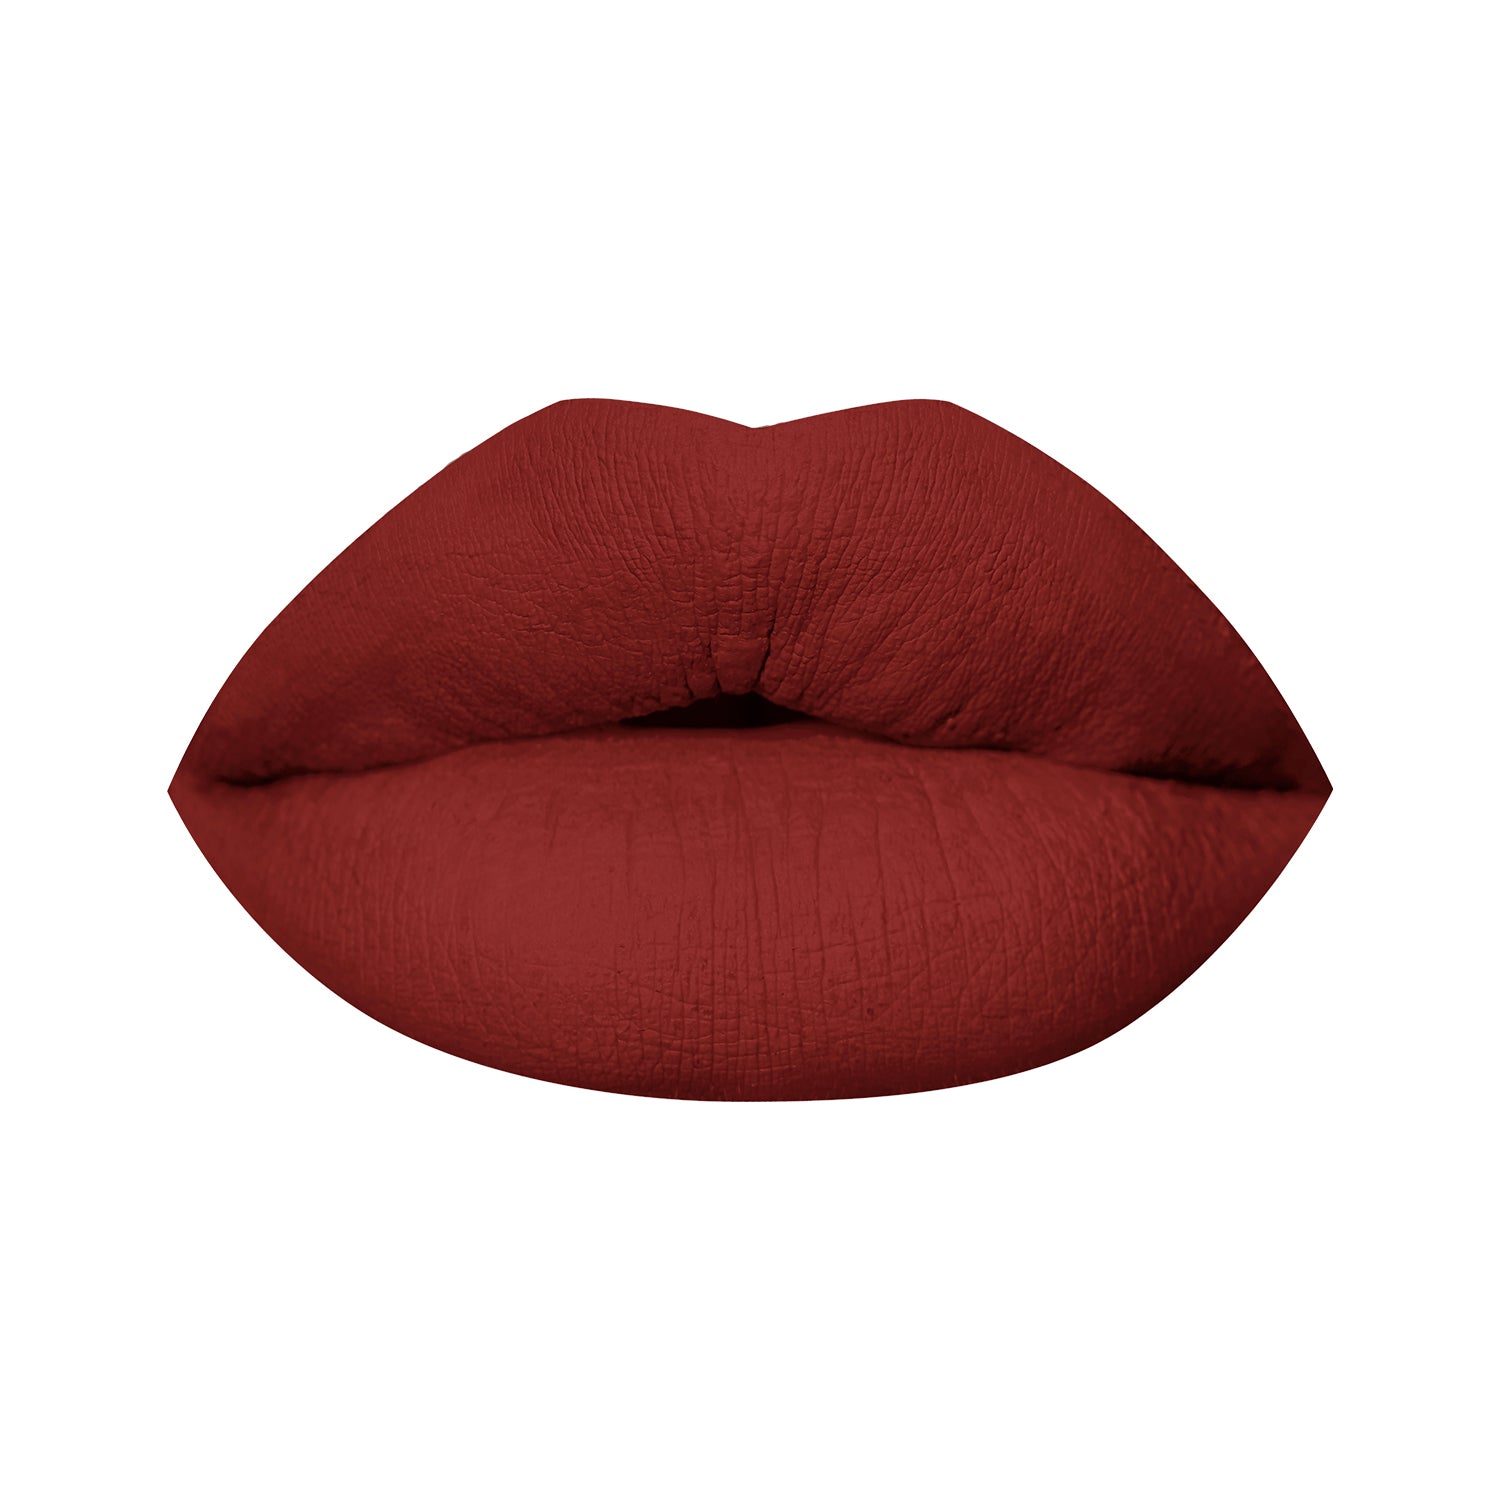 PAC Cosmetics Moody Matte Lipstick (1.6 gm) #Color_Devil's Delight